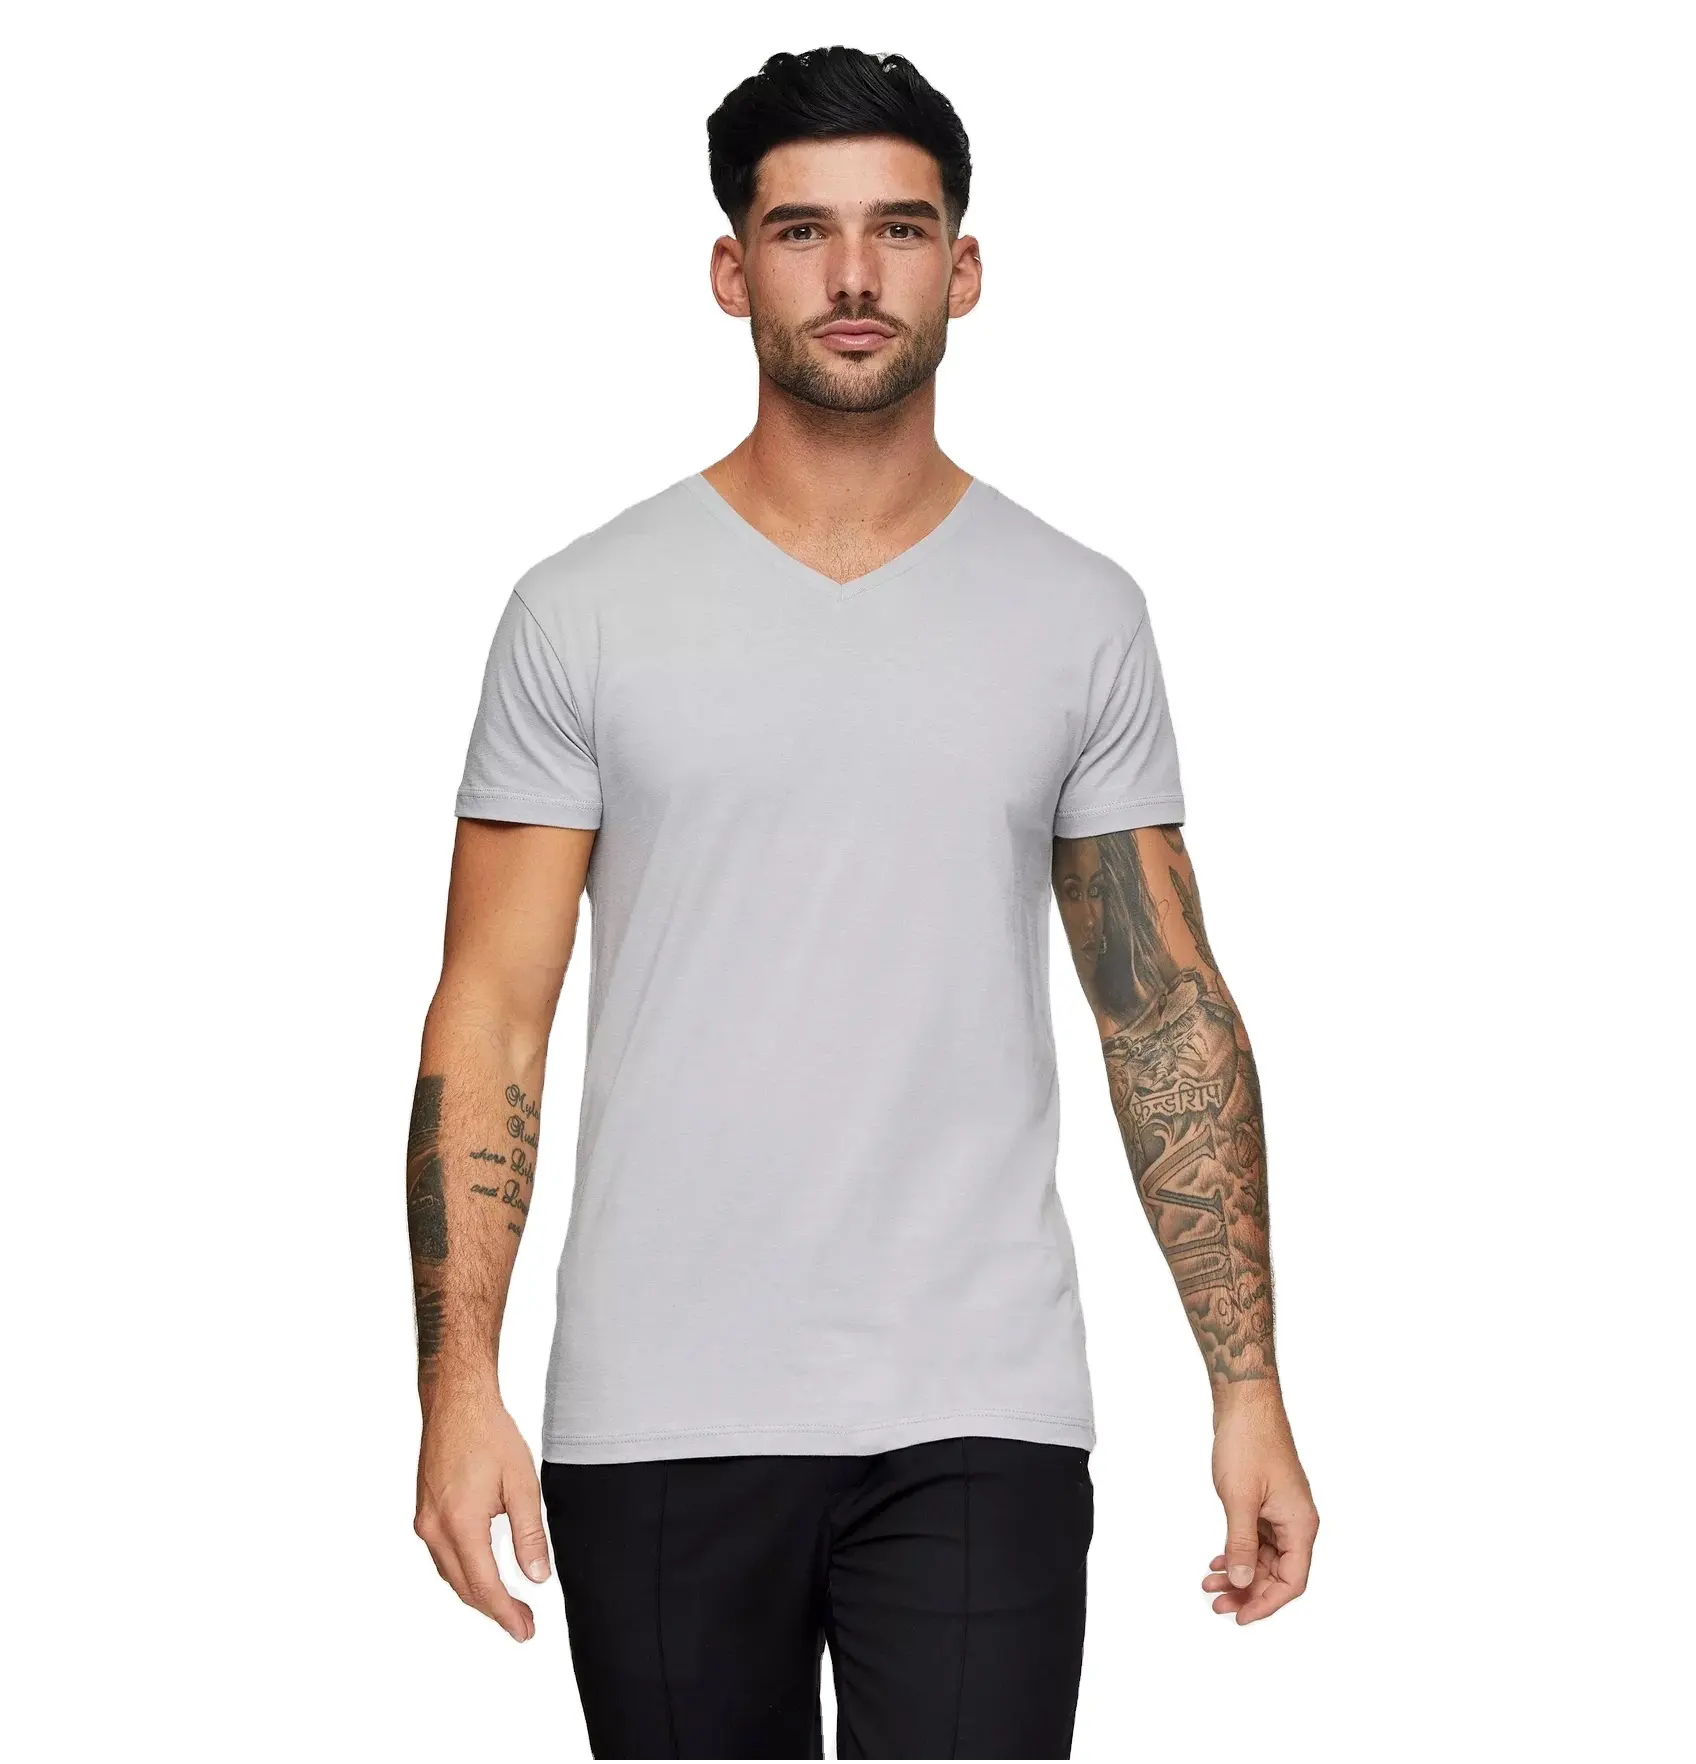 TS870 उच्च गुणवत्ता OEM पुरुषों सादे वि गर्दन टी शर्ट ग्रे कस्टम मुद्रण 100% कपास आकस्मिक टी रिक्त टी-शर्ट Mens मुद्रित Tshirts